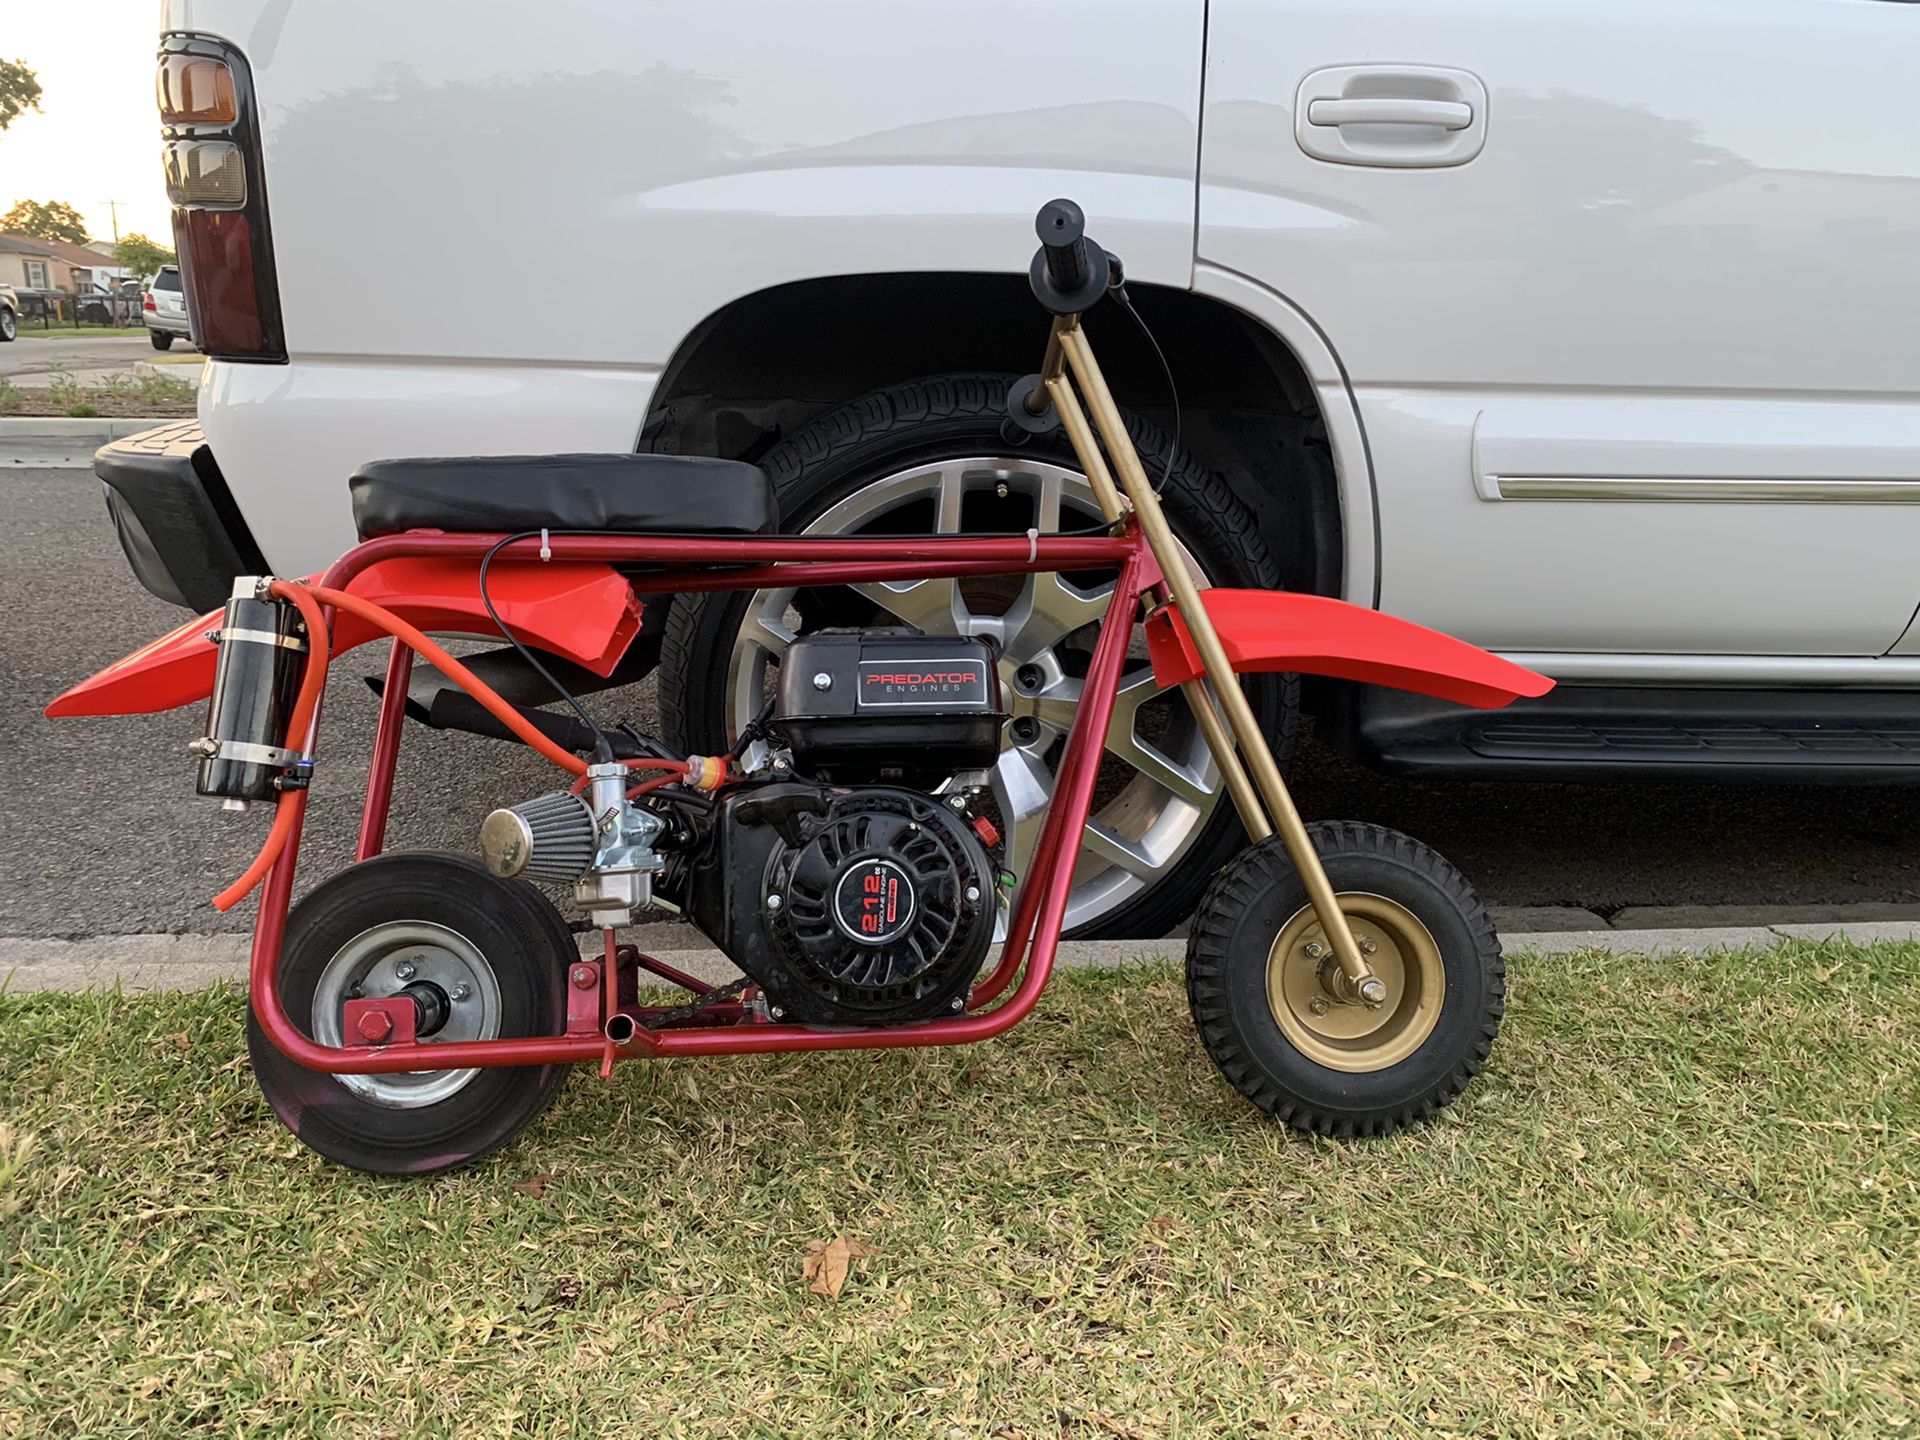 Mini bike predetor